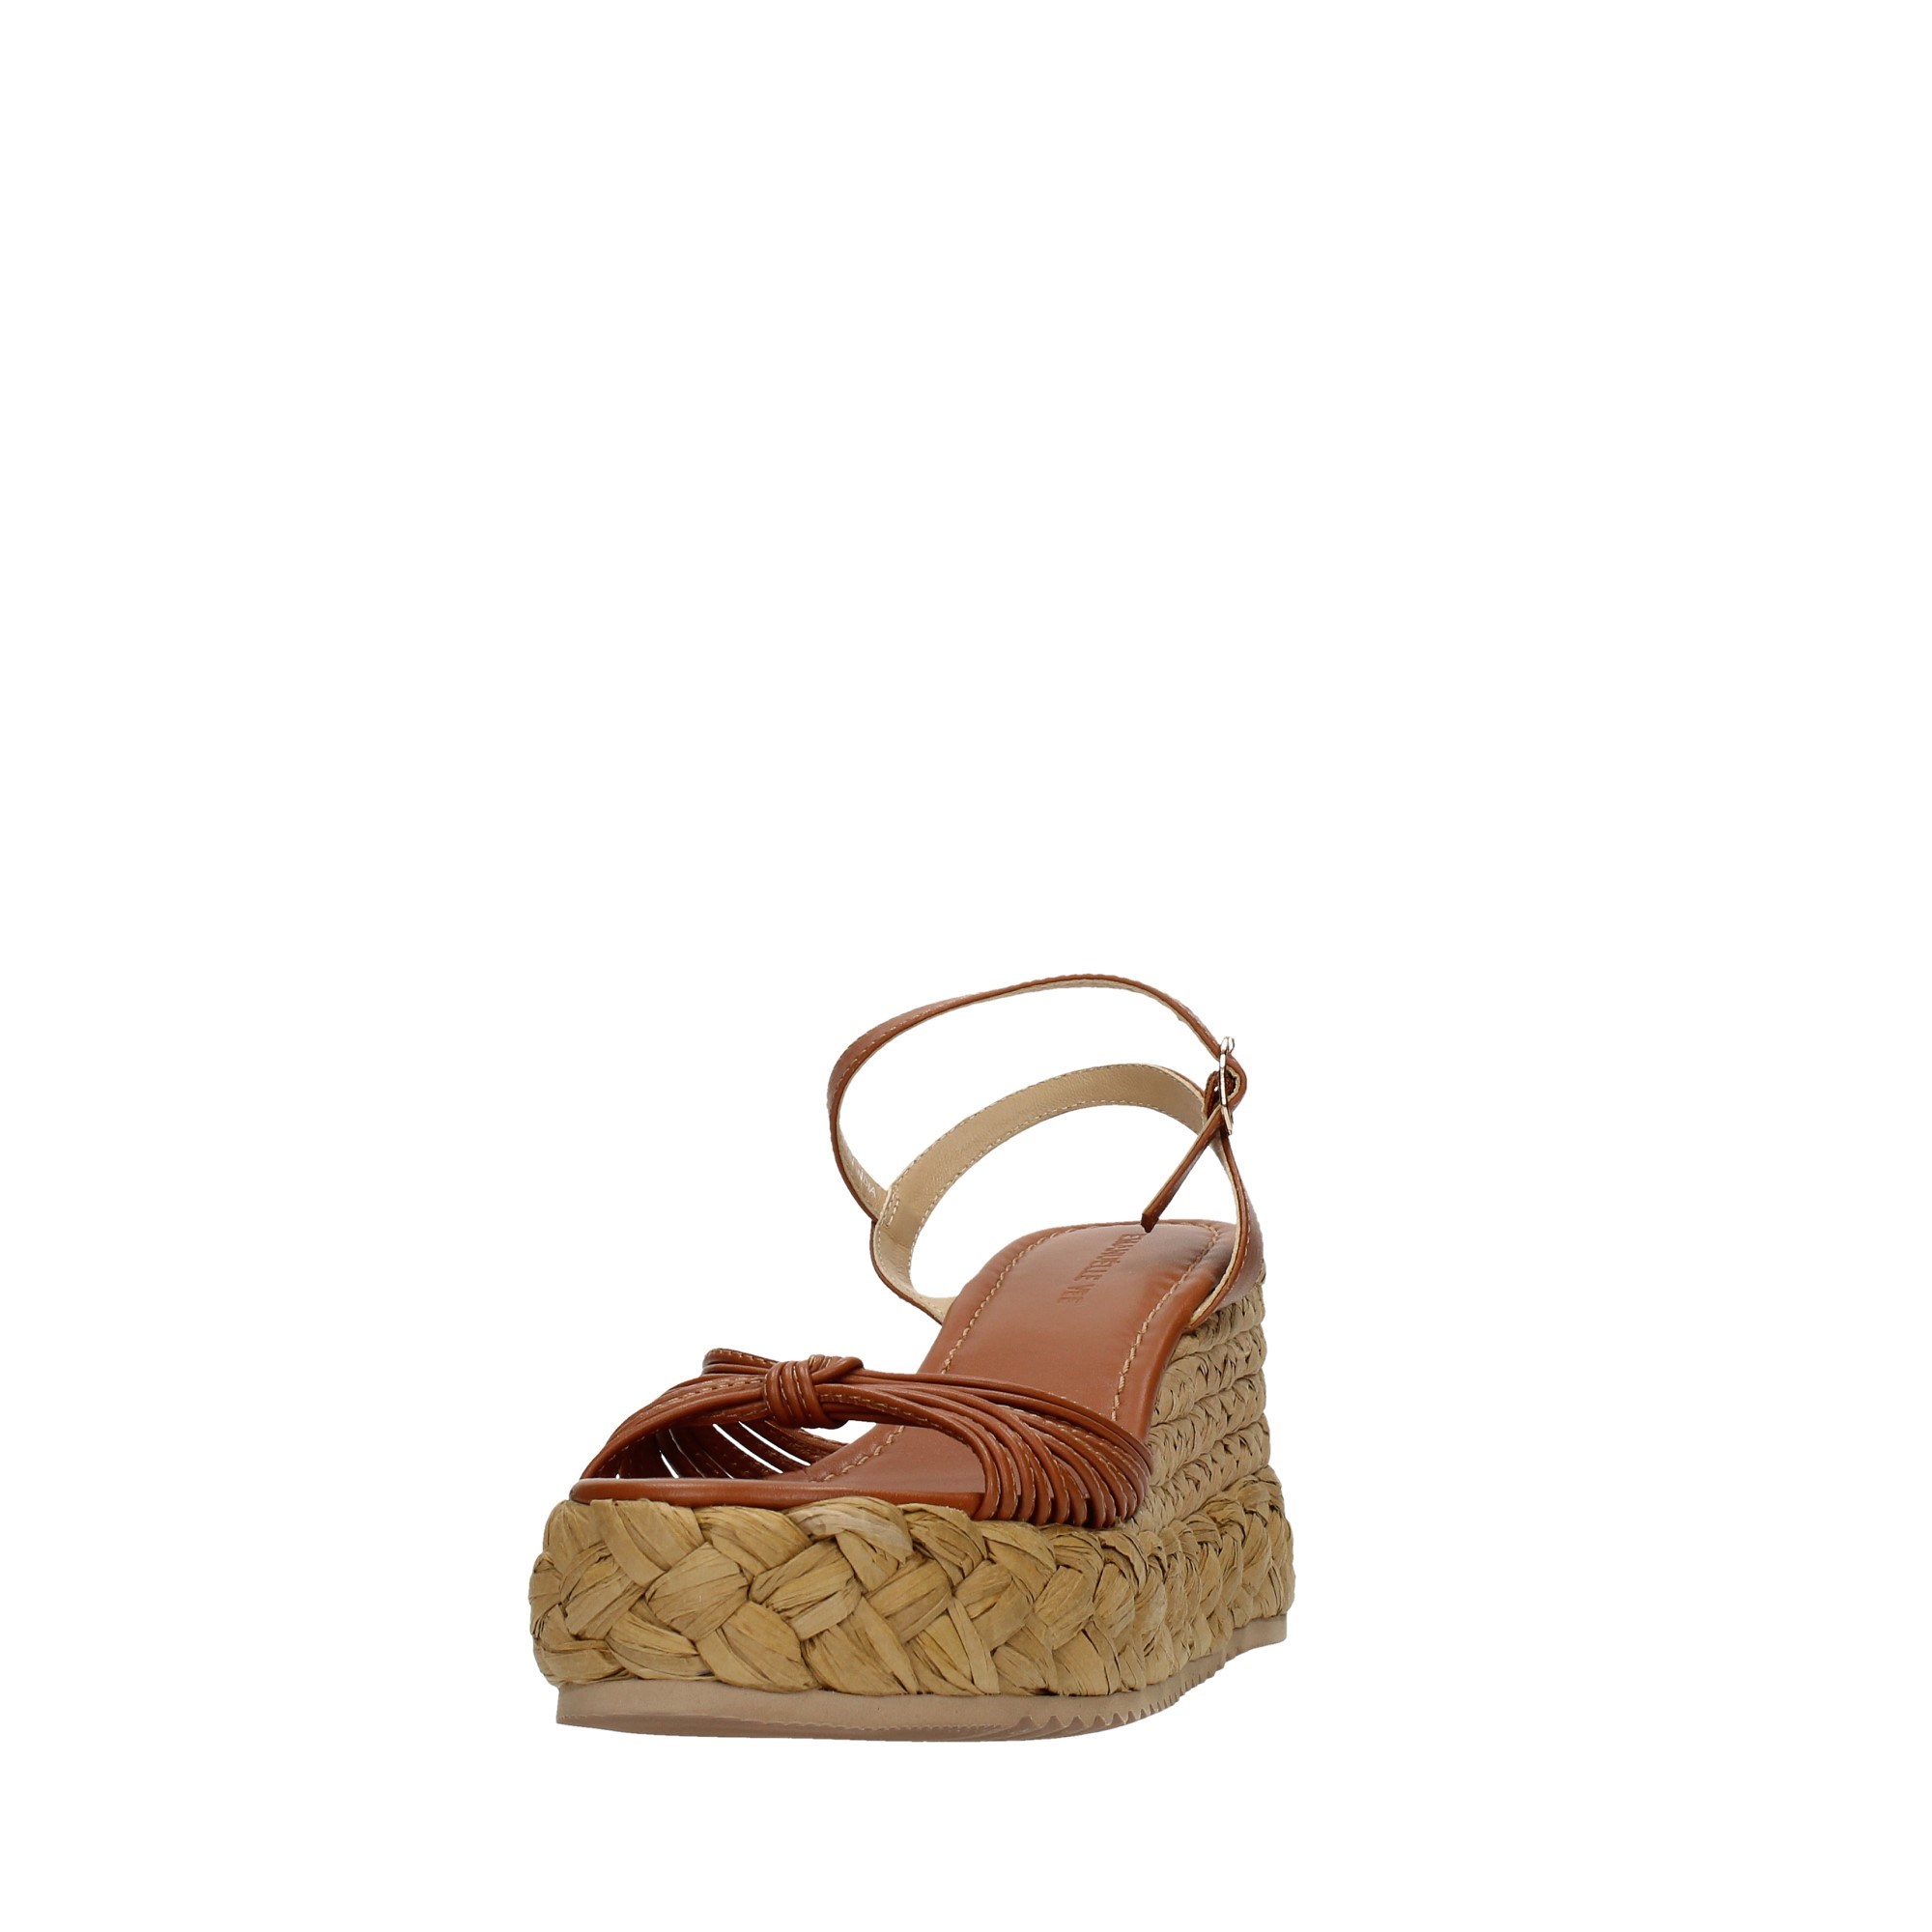 Emanuelle Vee Shoes Women Wedge Sandals 421M-410-15